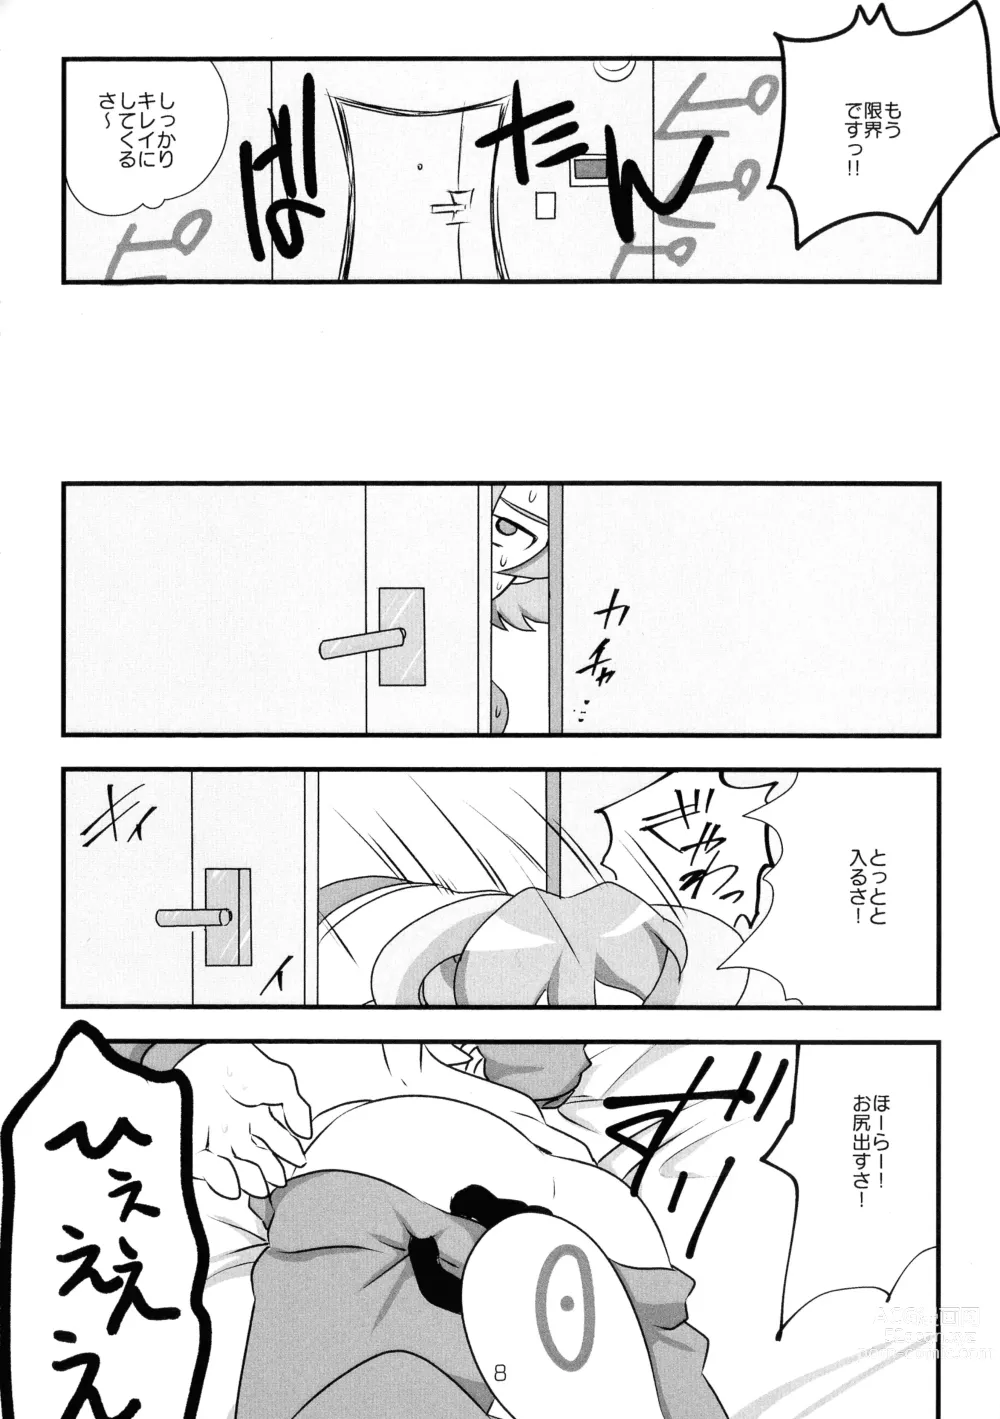 Page 9 of doujinshi Chusei kokoro ikusei gairon 2